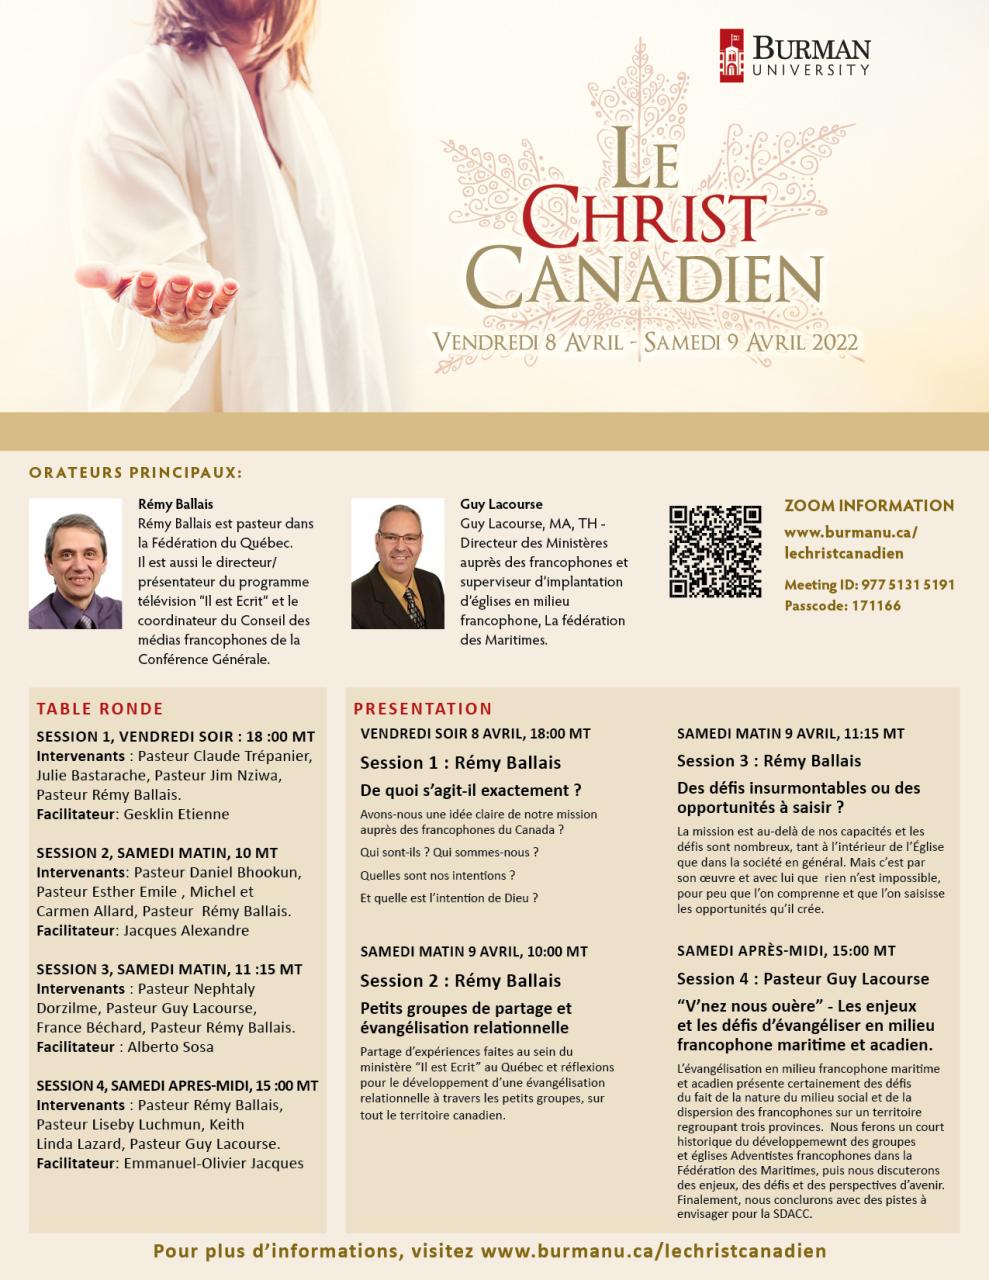 Le Canadien Christ